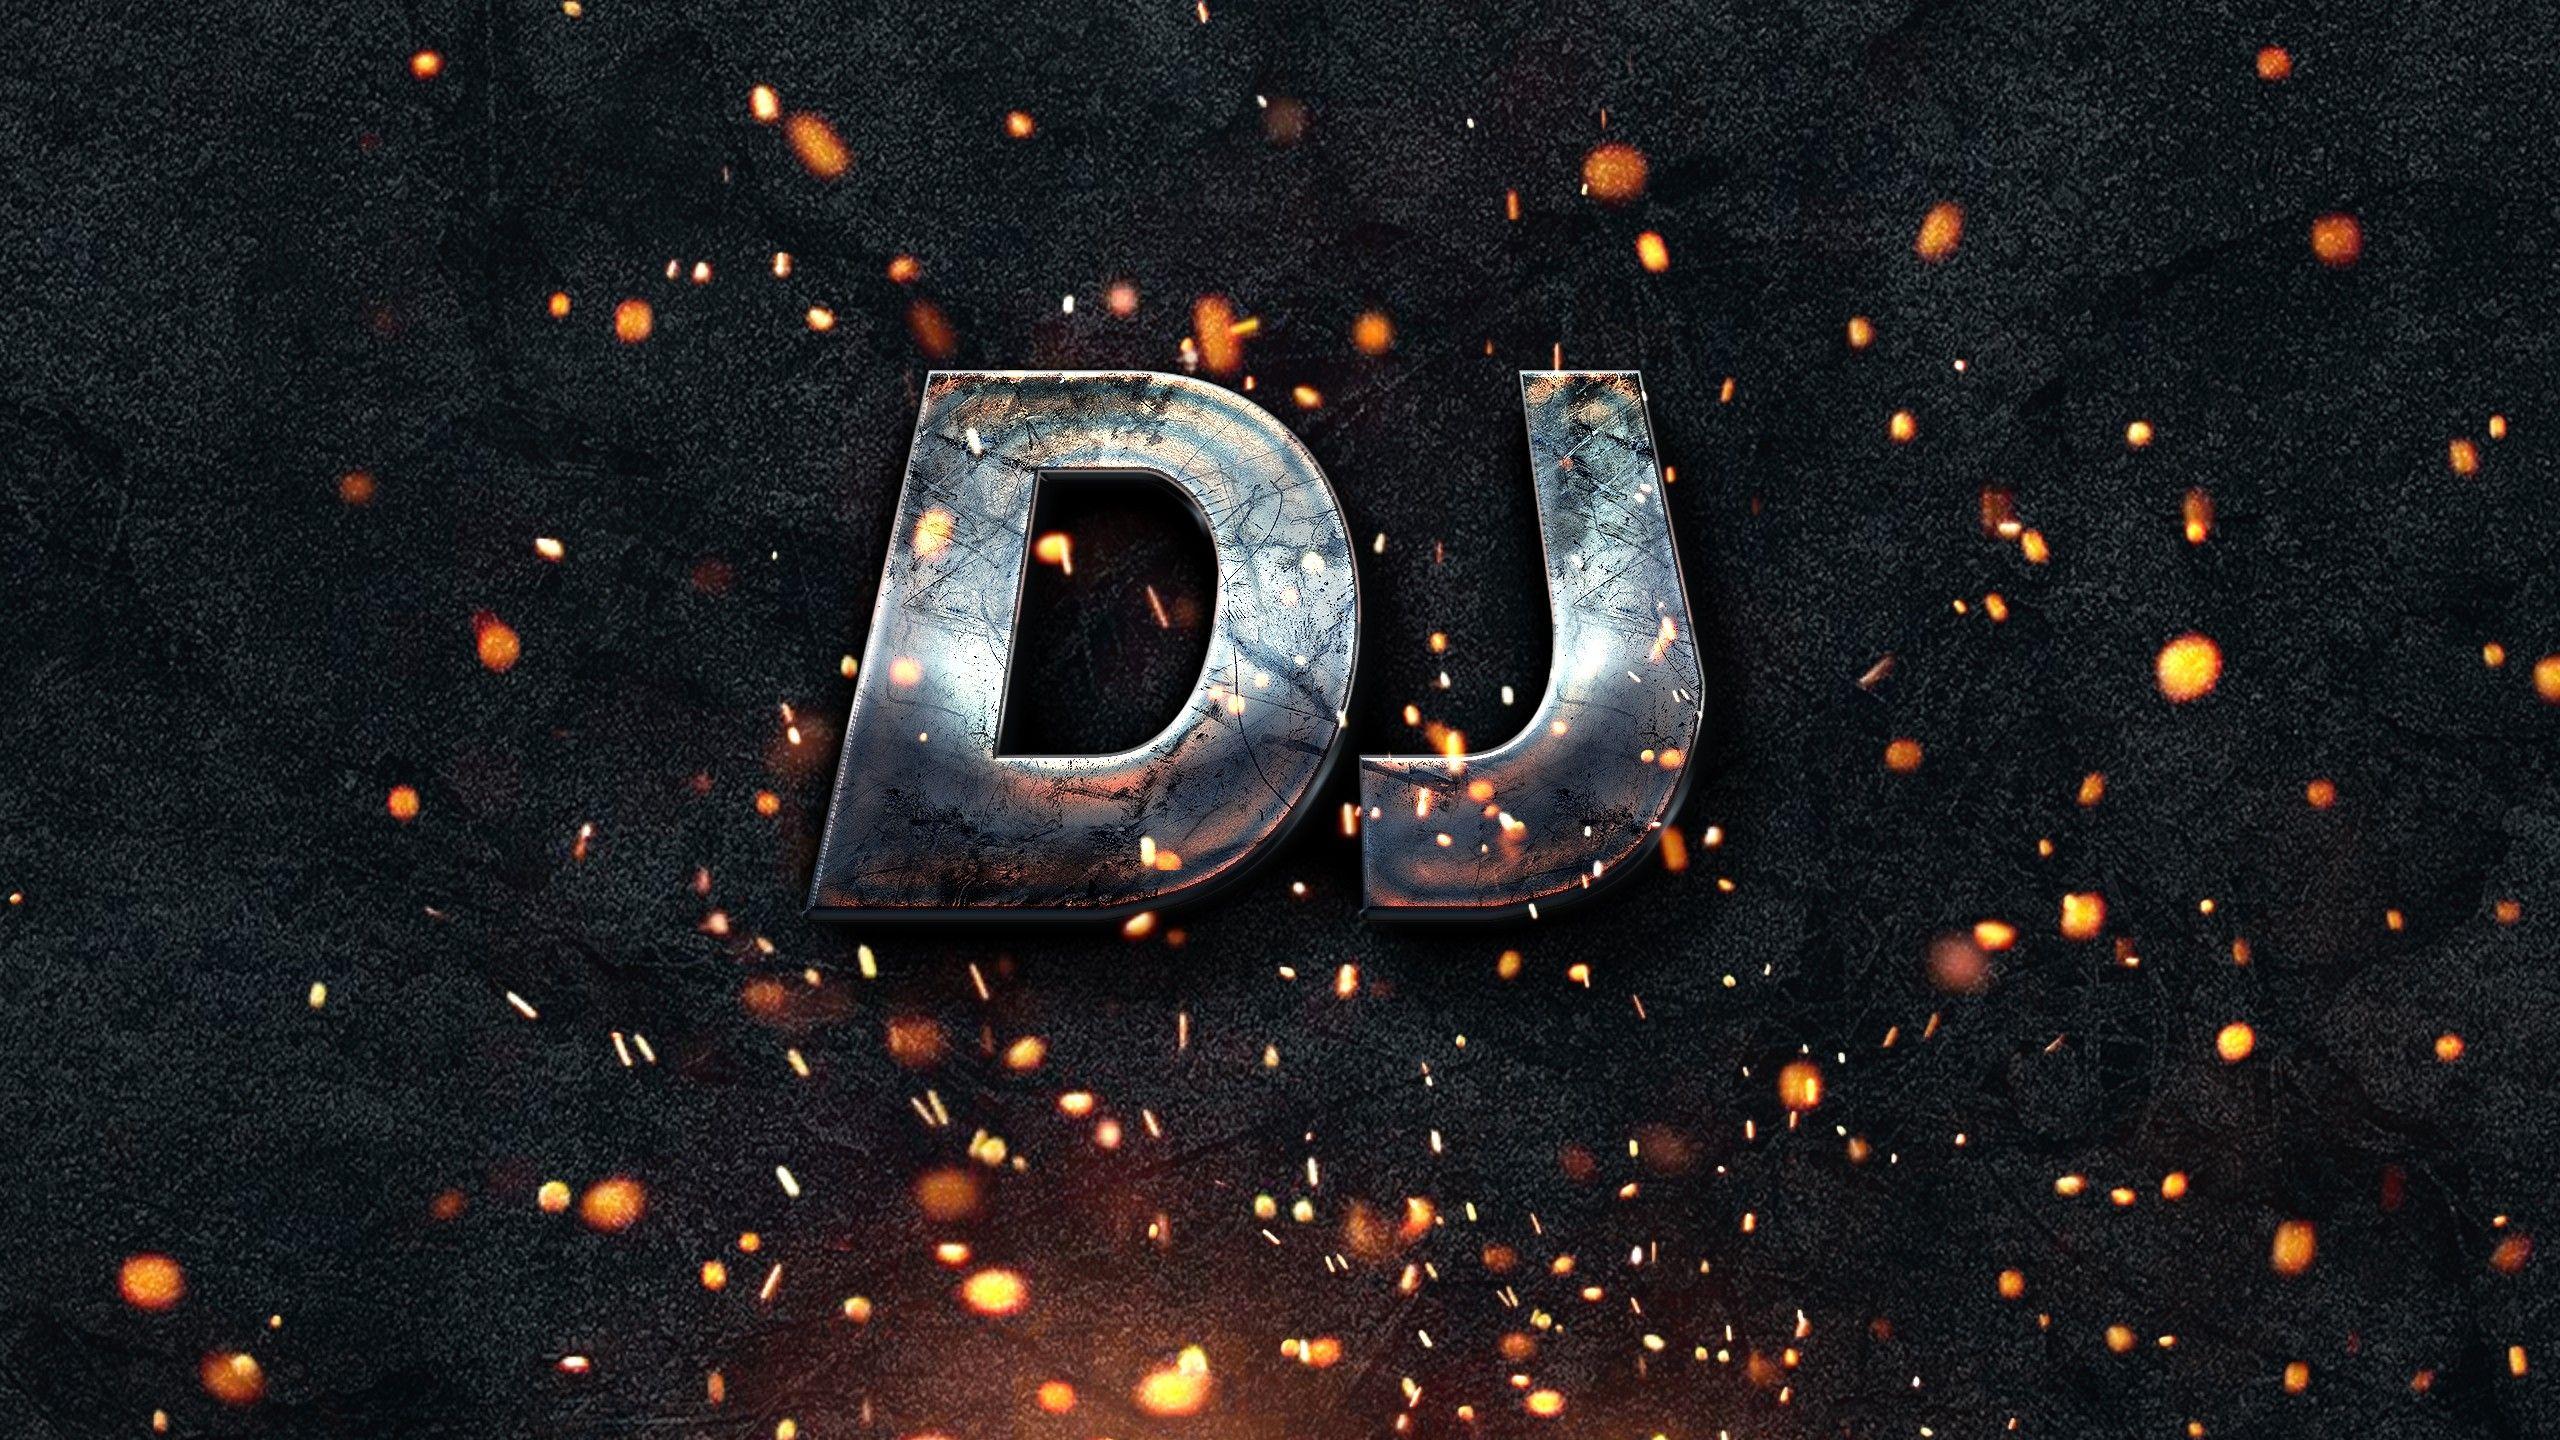 dj logo wallpaper desktop